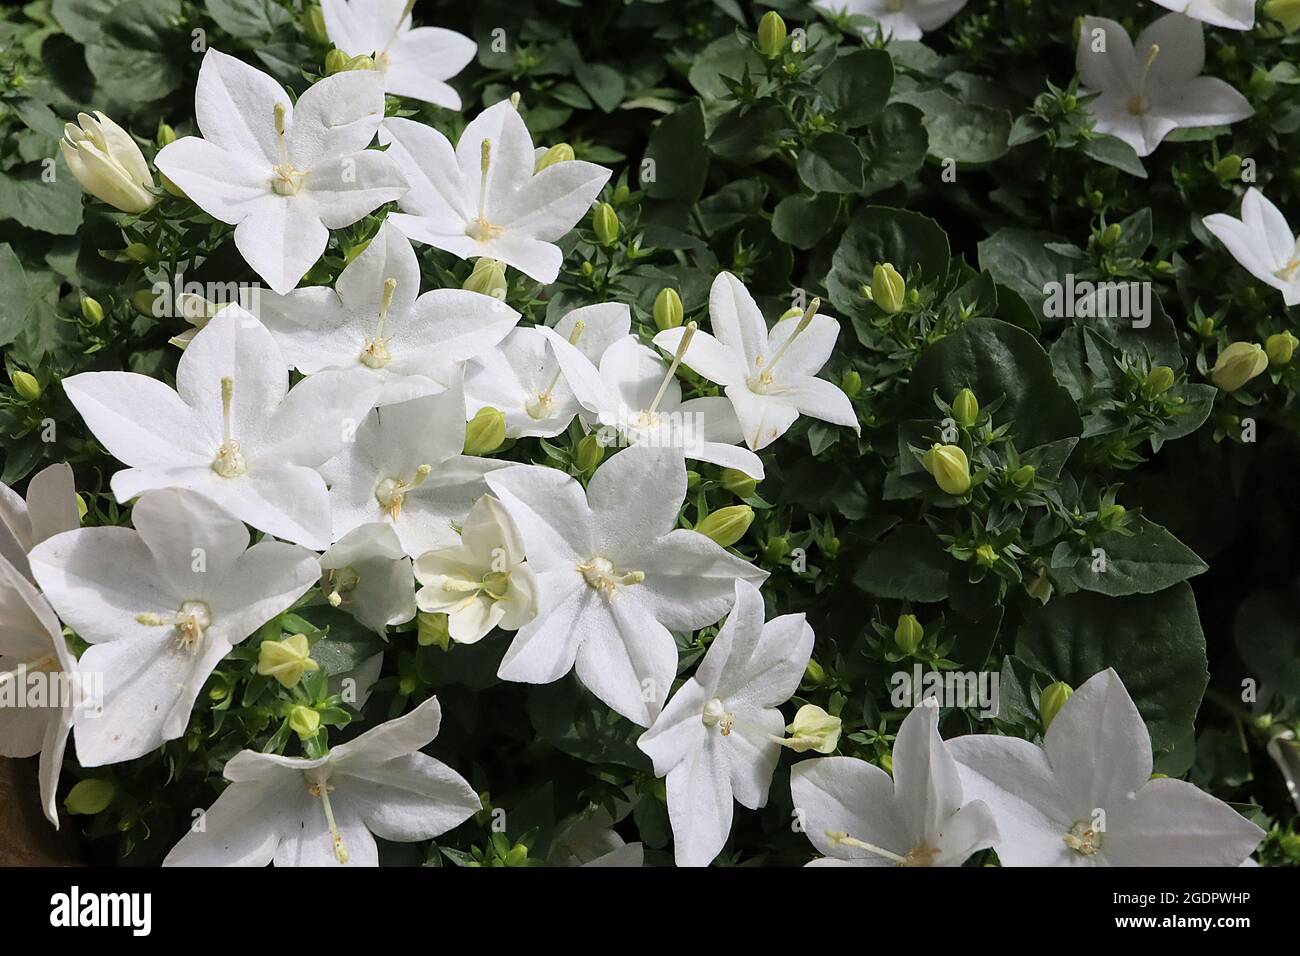 Campanula isophylla ‘Alba’ Italienische Glockenblume Alba - Gruppen von weißen, offenen Blüten mit länglicher Form, Juli, England, Großbritannien Stockfoto